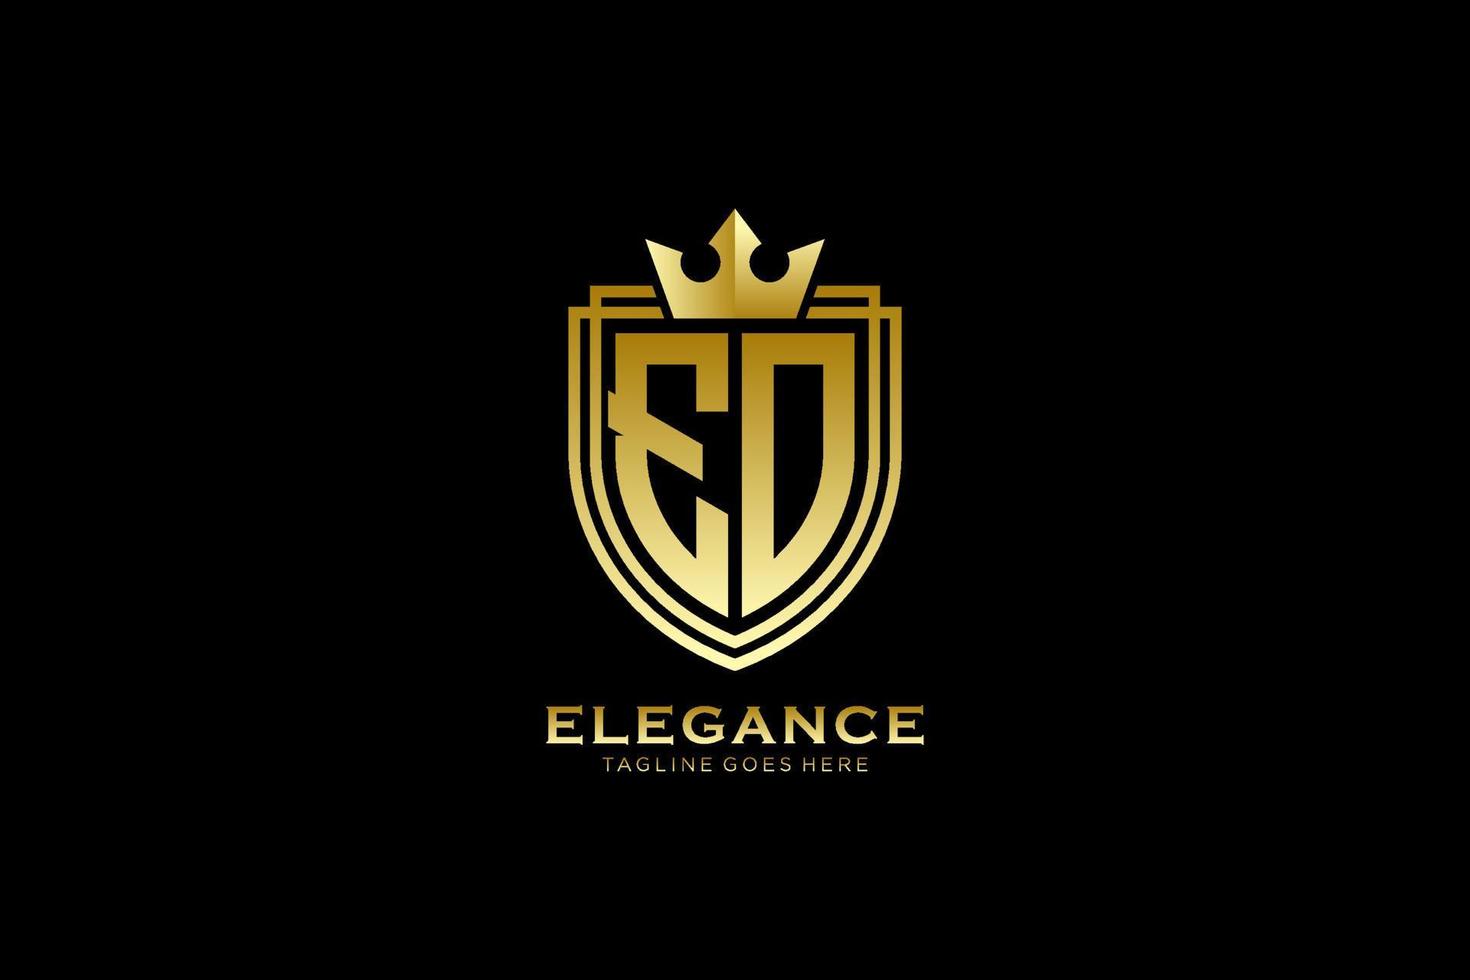 logo monogramme de luxe élégant initial eo ou modèle de badge avec volutes et couronne royale - parfait pour les projets de marque de luxe vecteur